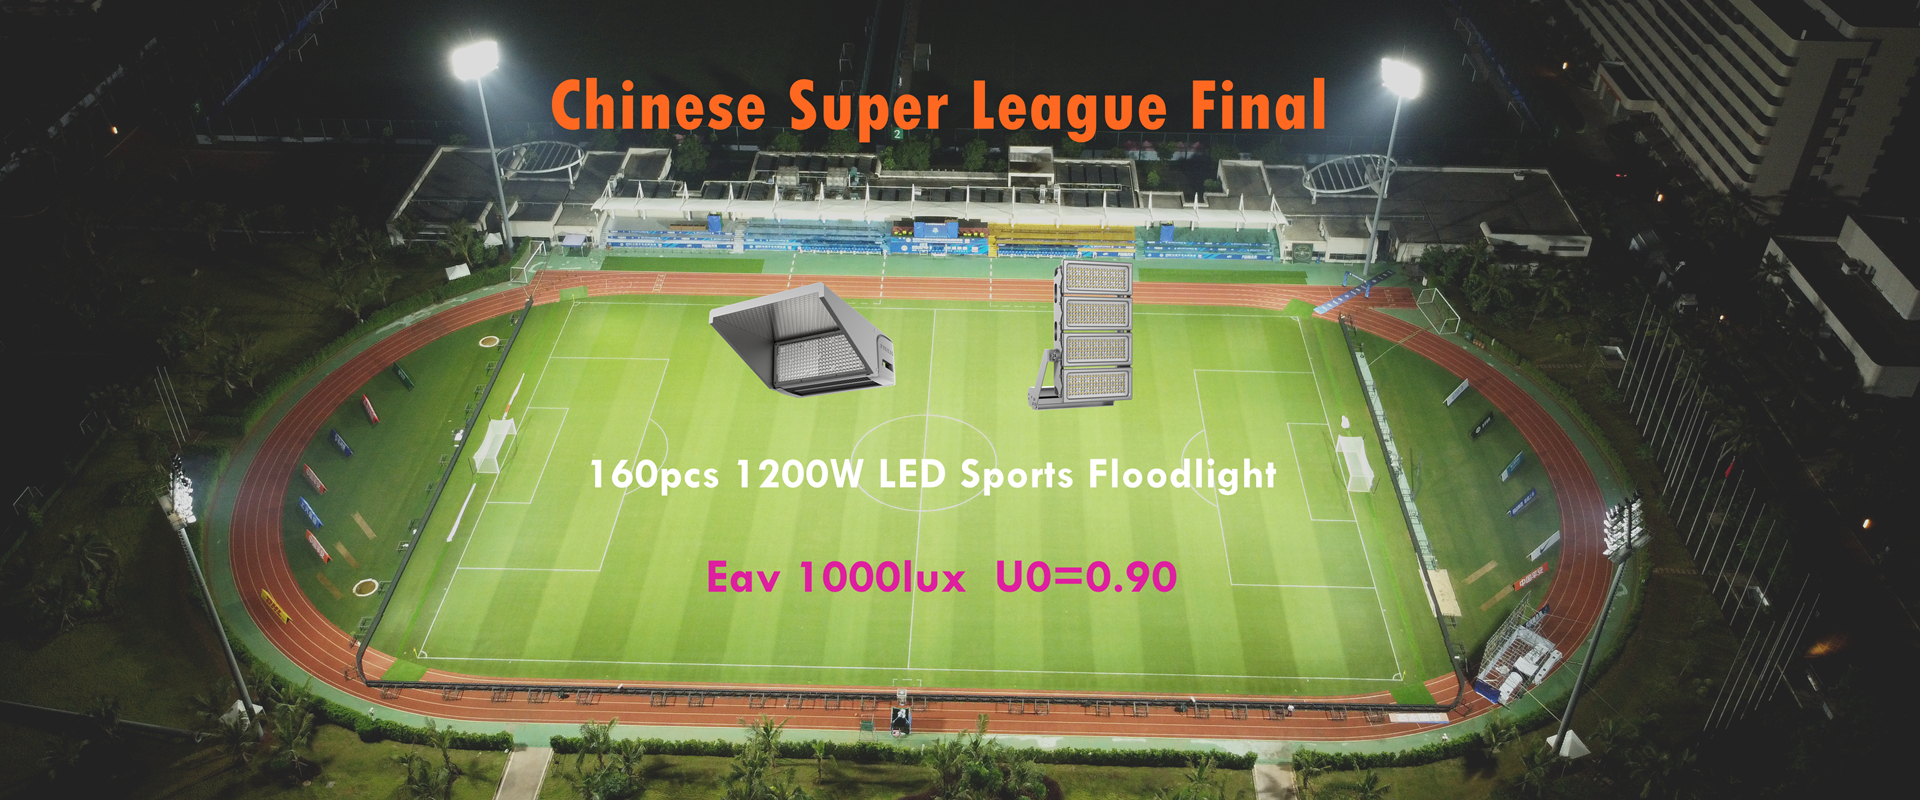 1200W LED kev ua si dej nyab teeb rau suav teb super League 2022 hauv Haikou football chaw ntau pob